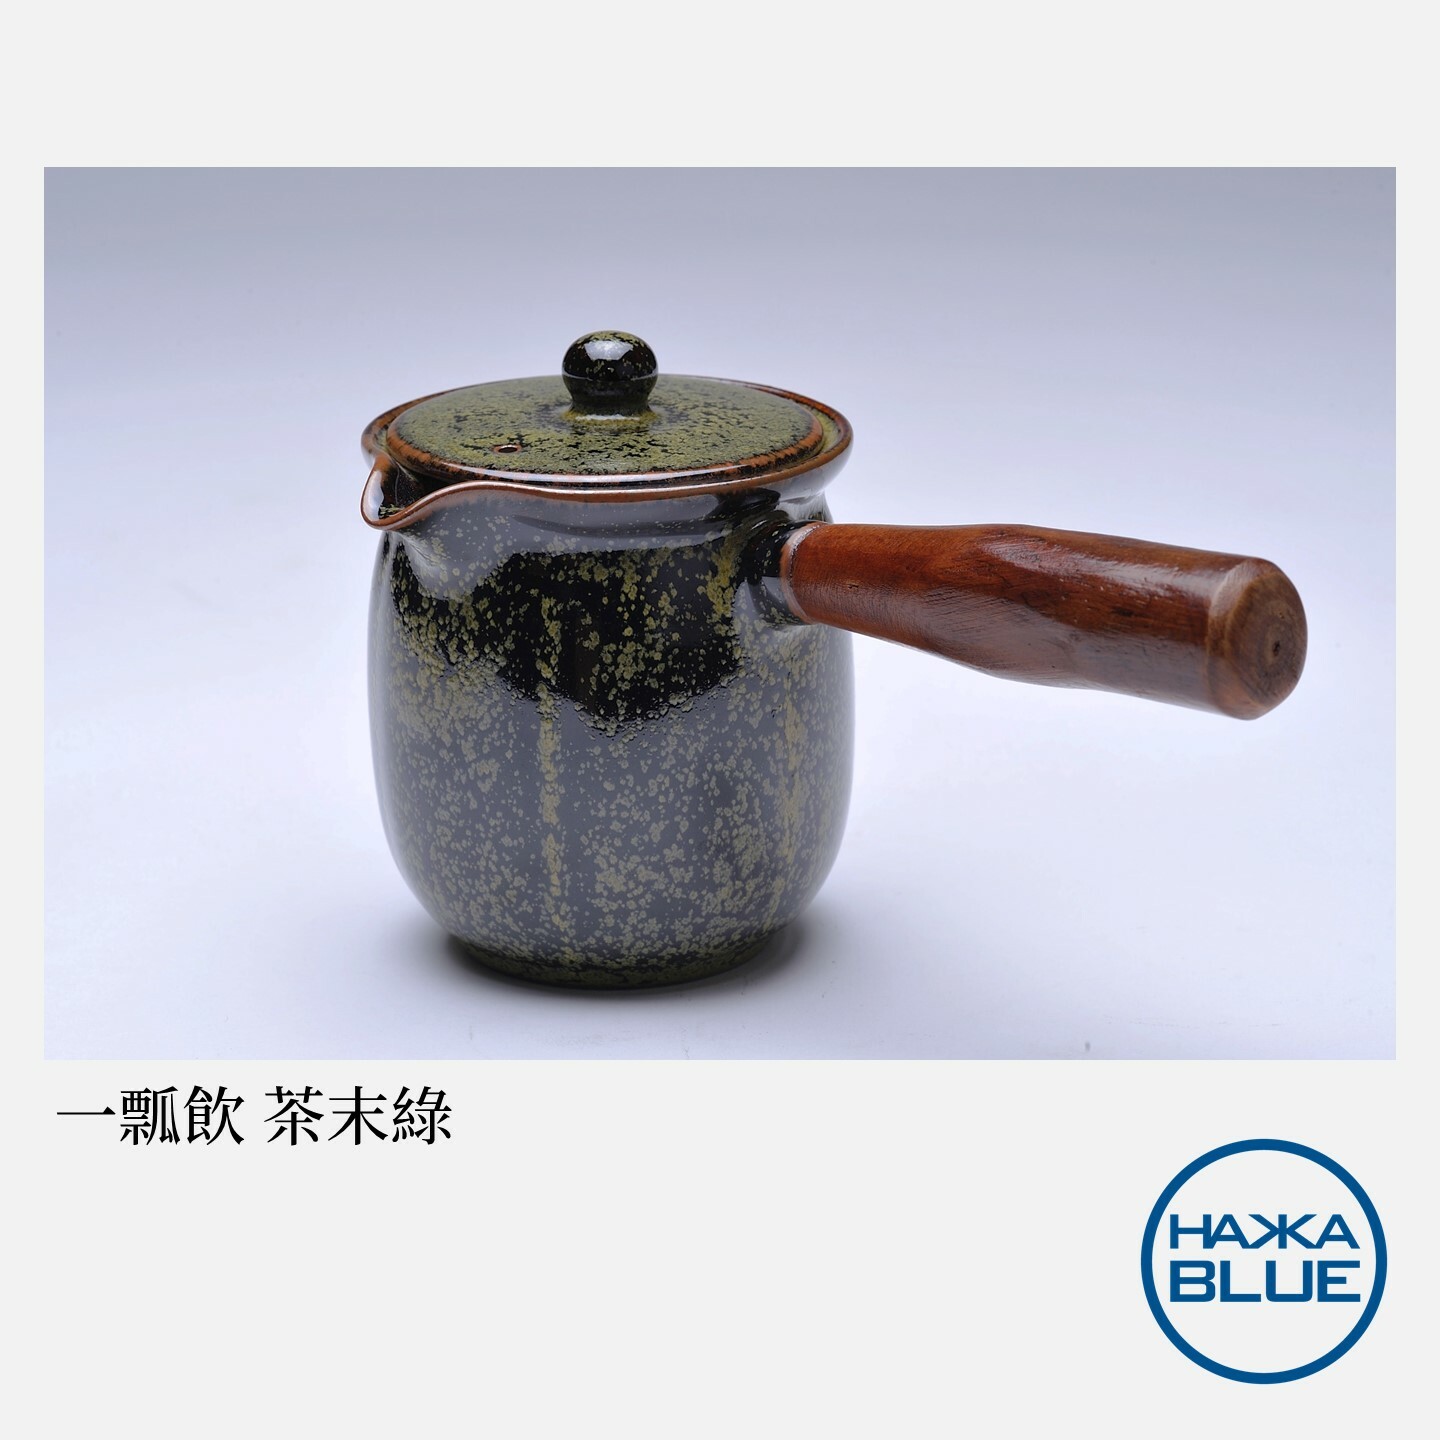 一瓢飲茶具組– HAKKA-BLUE 台客藍